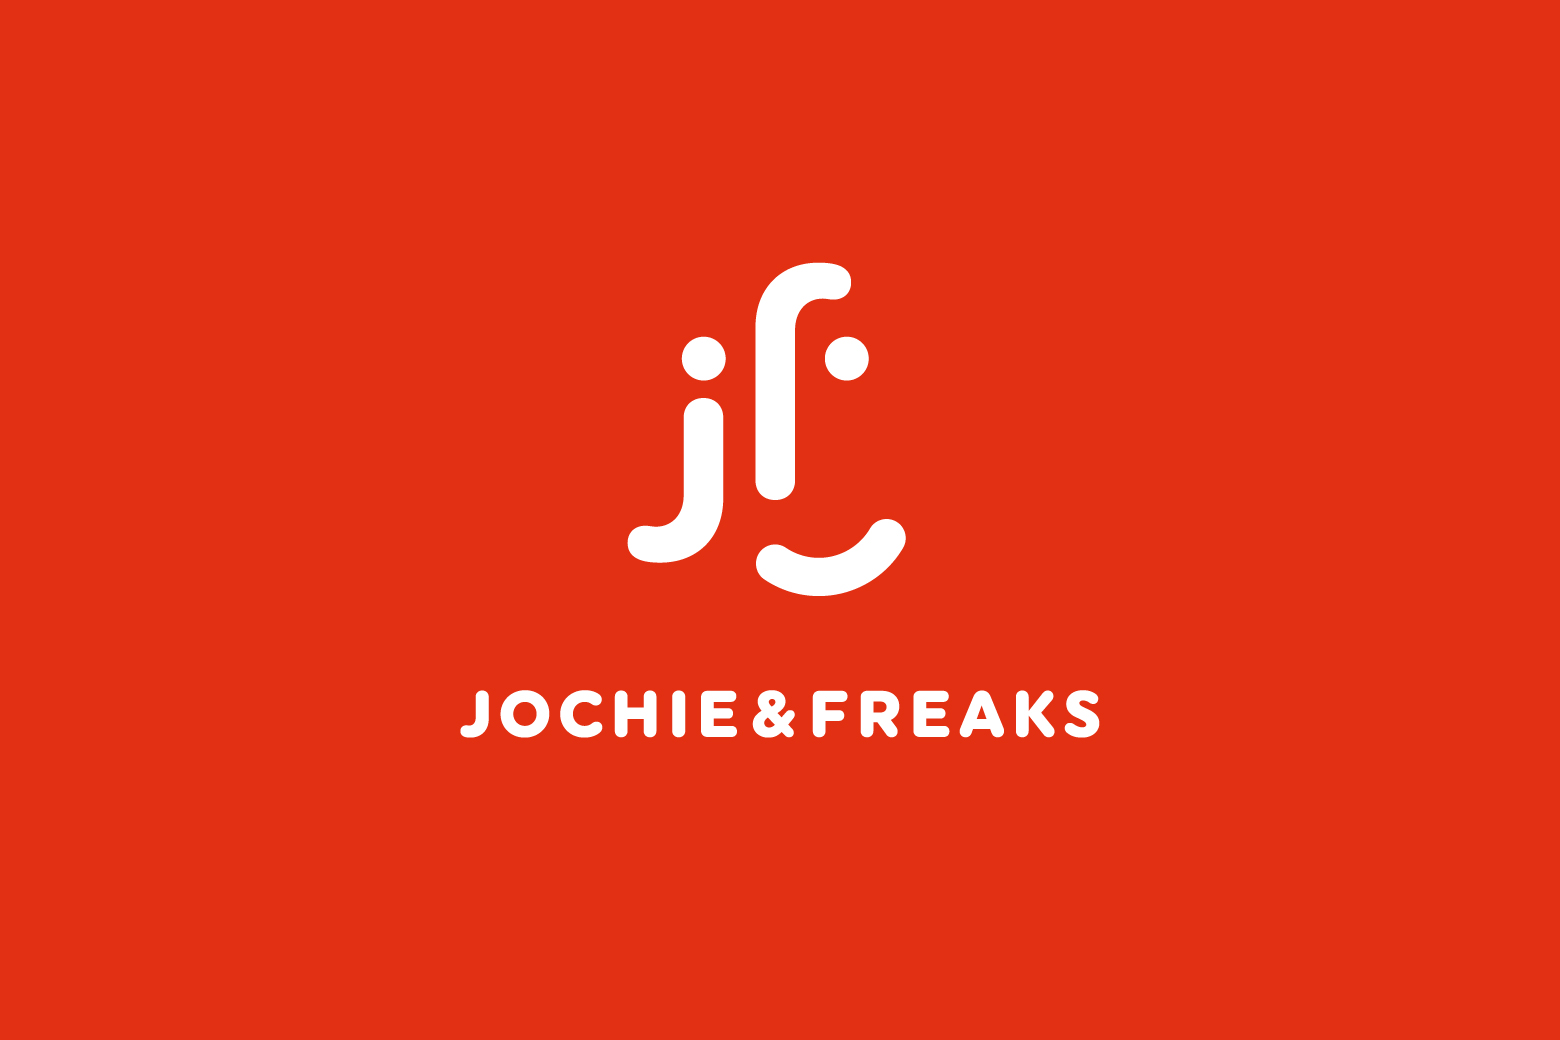 Jochie & freaks